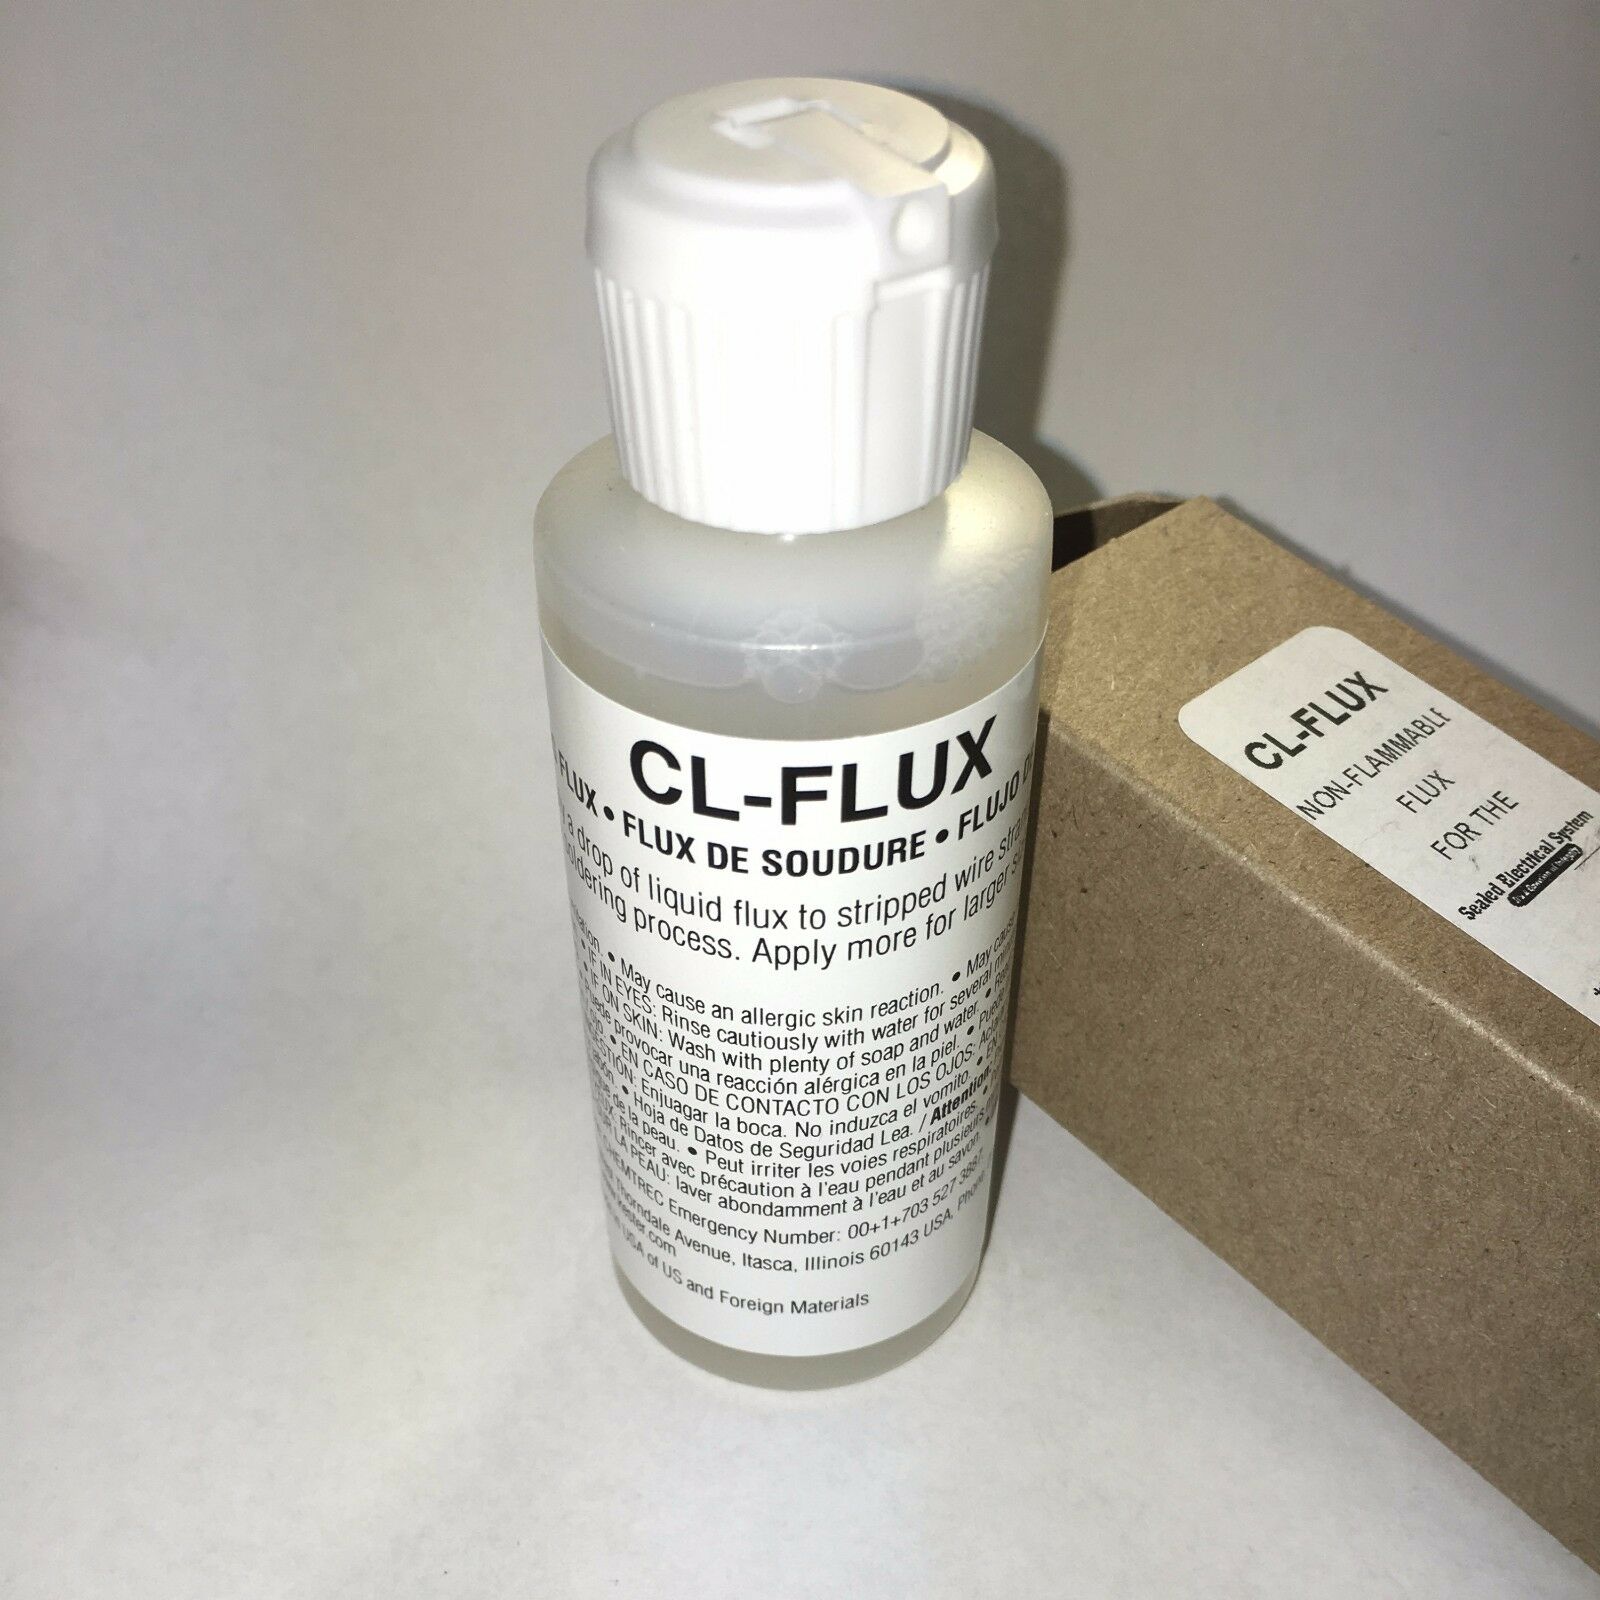 Liquid Flux No Clean Cl-flux (kester 979) 2 Oz Ounces For Solder Slug Pellets